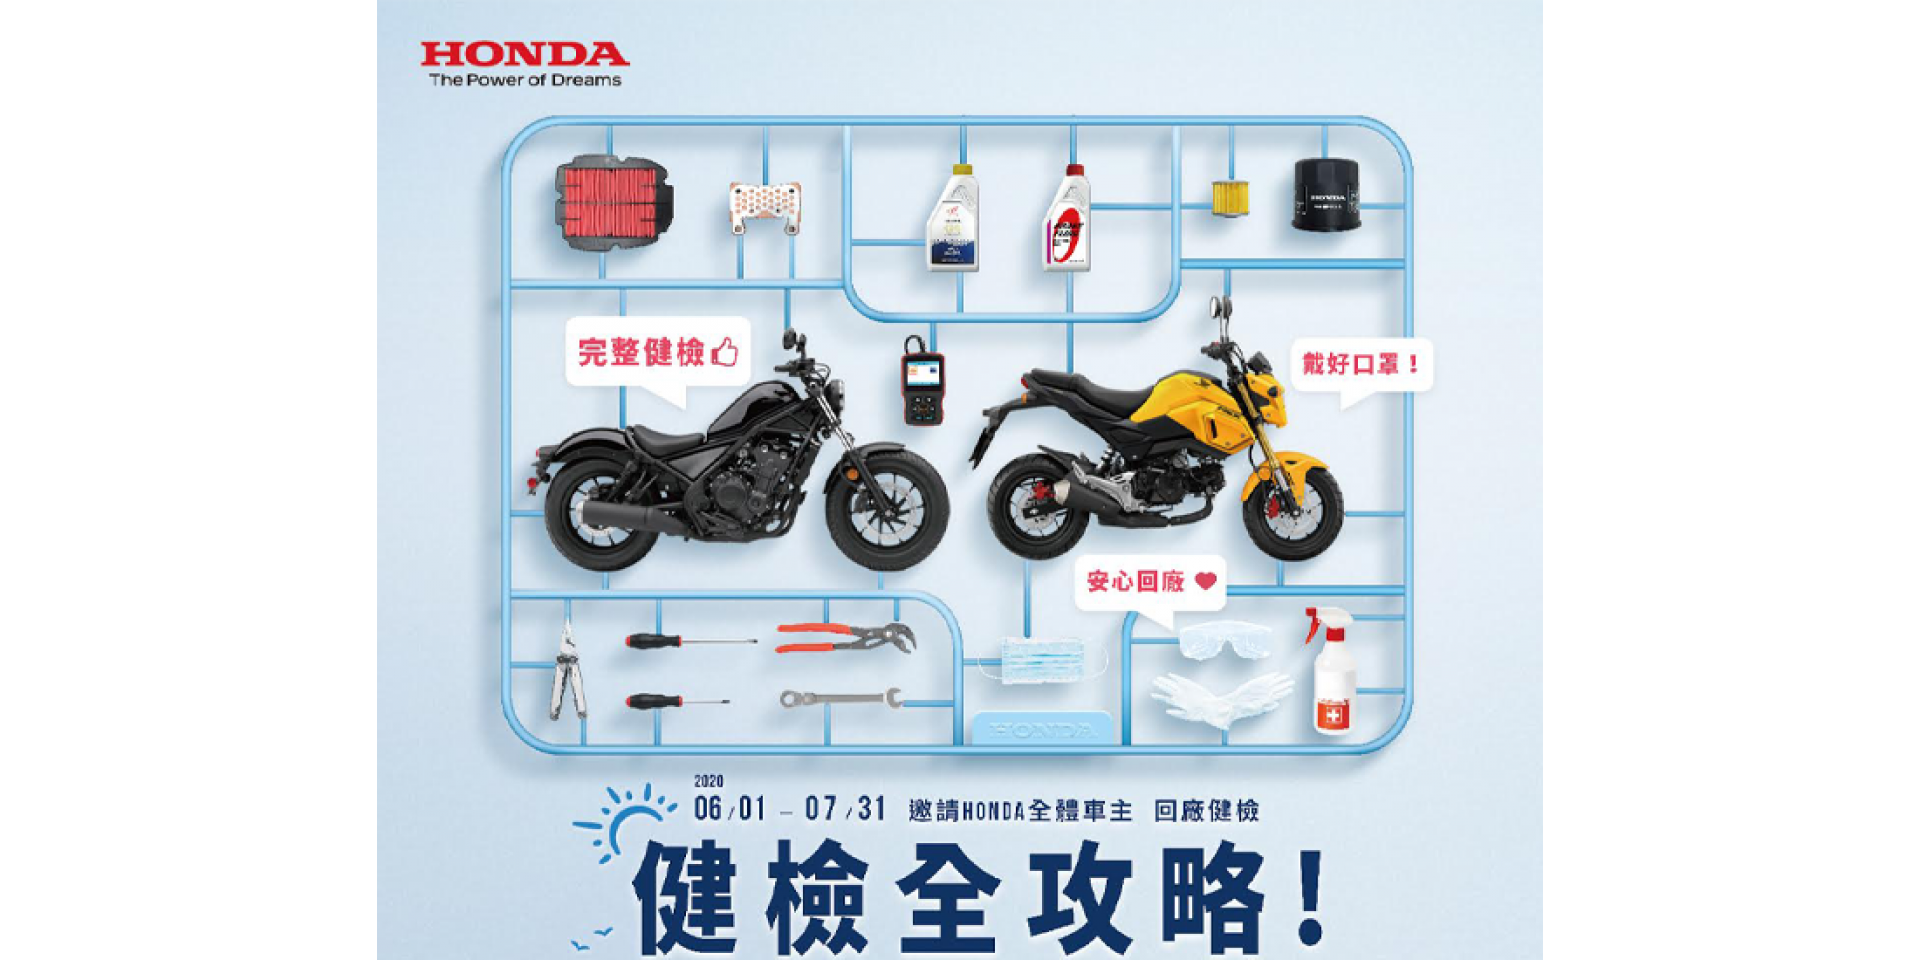 官方新聞稿。Honda Motorcycle 2020 安心健檢活動開跑，愛車健檢全攻略！